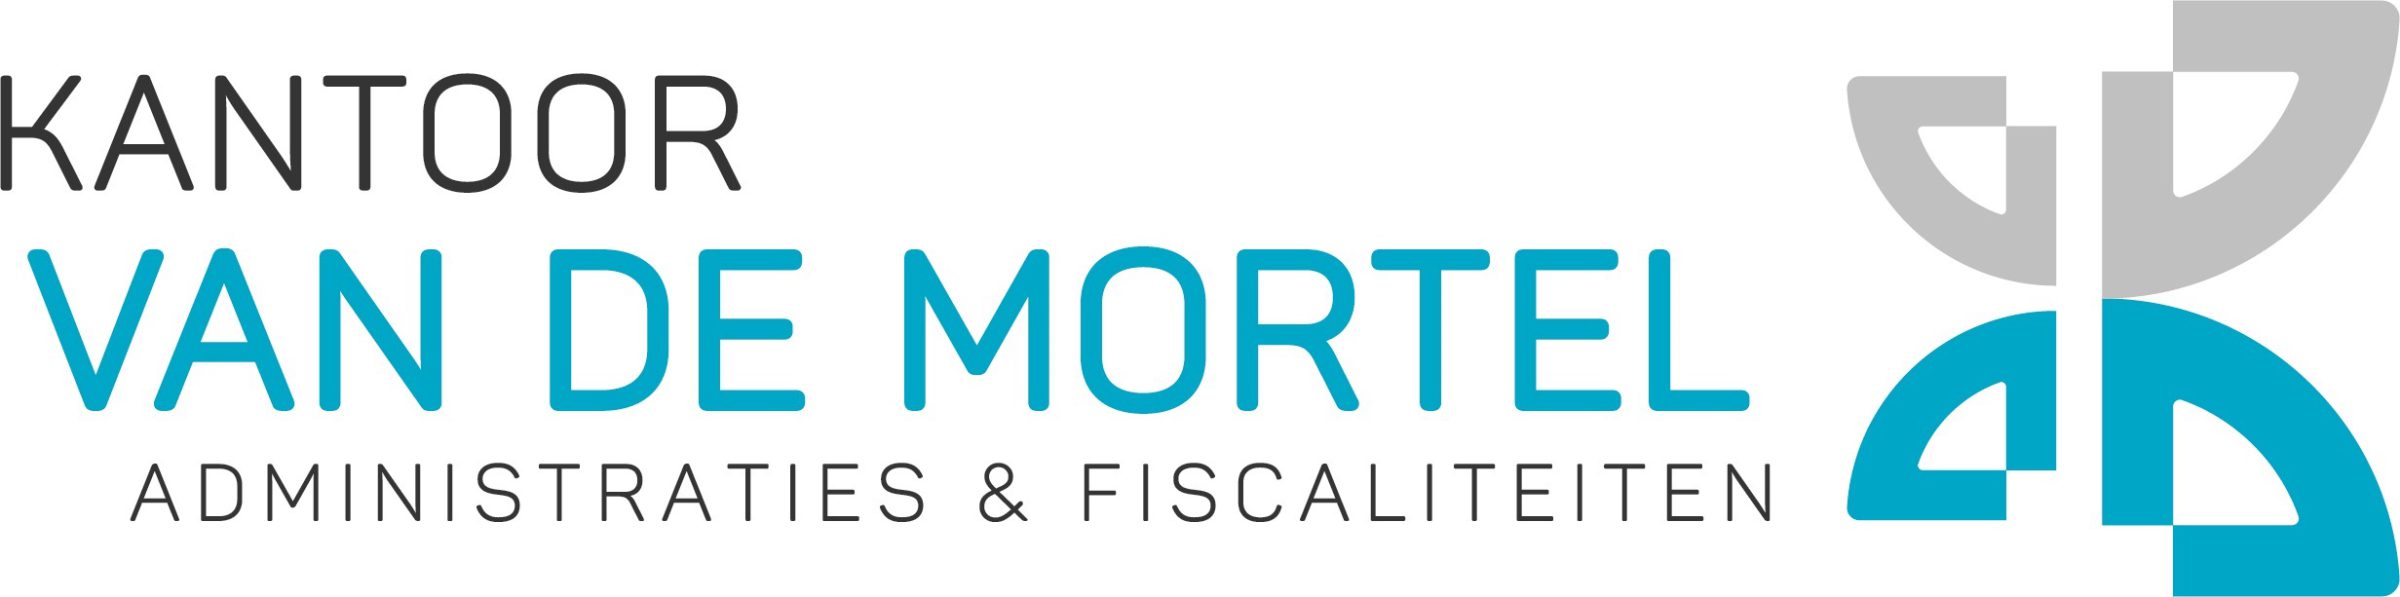 Kantoor van de Mortel, administraciones y fiscalidad, logotipo